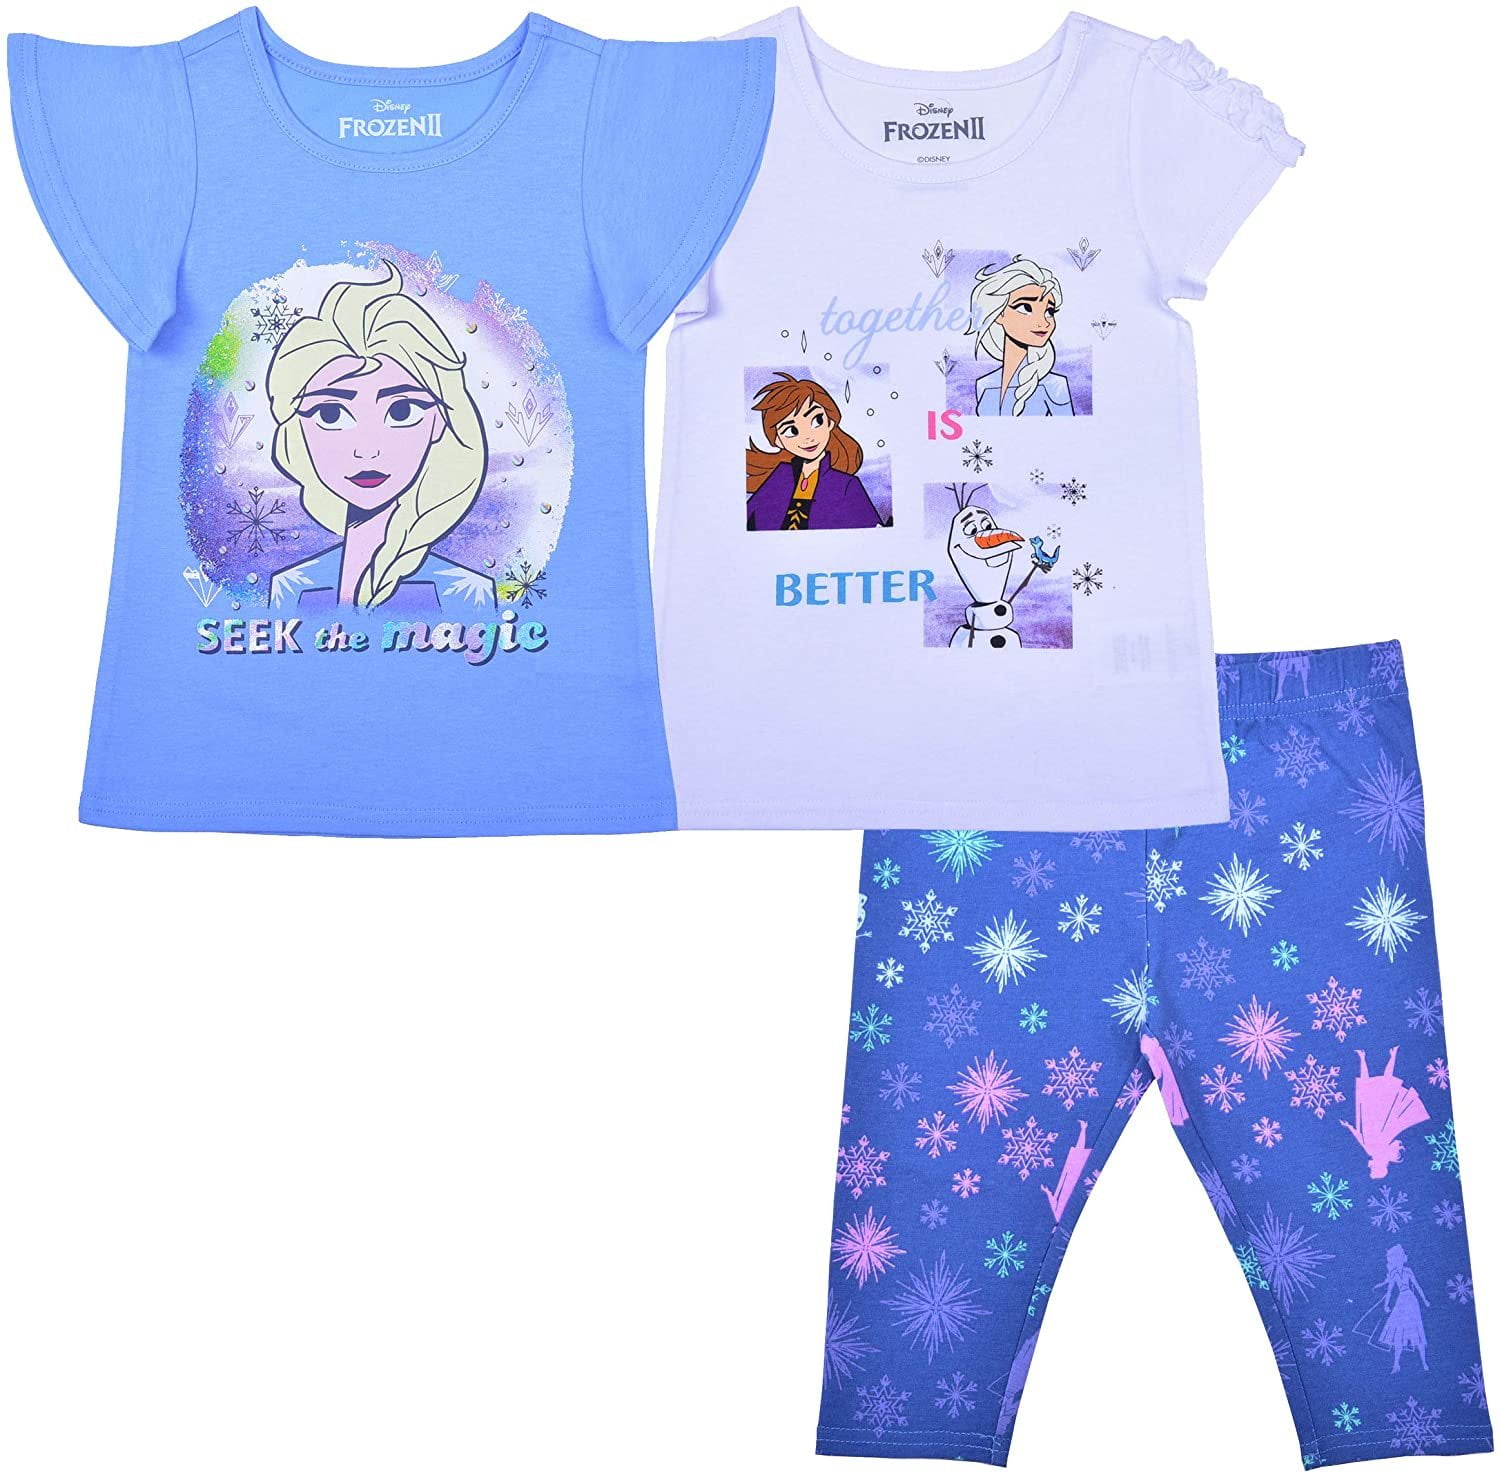 Frozen 2 Toddler Girls' Panties, 6 Pack Sizes 2T-4T